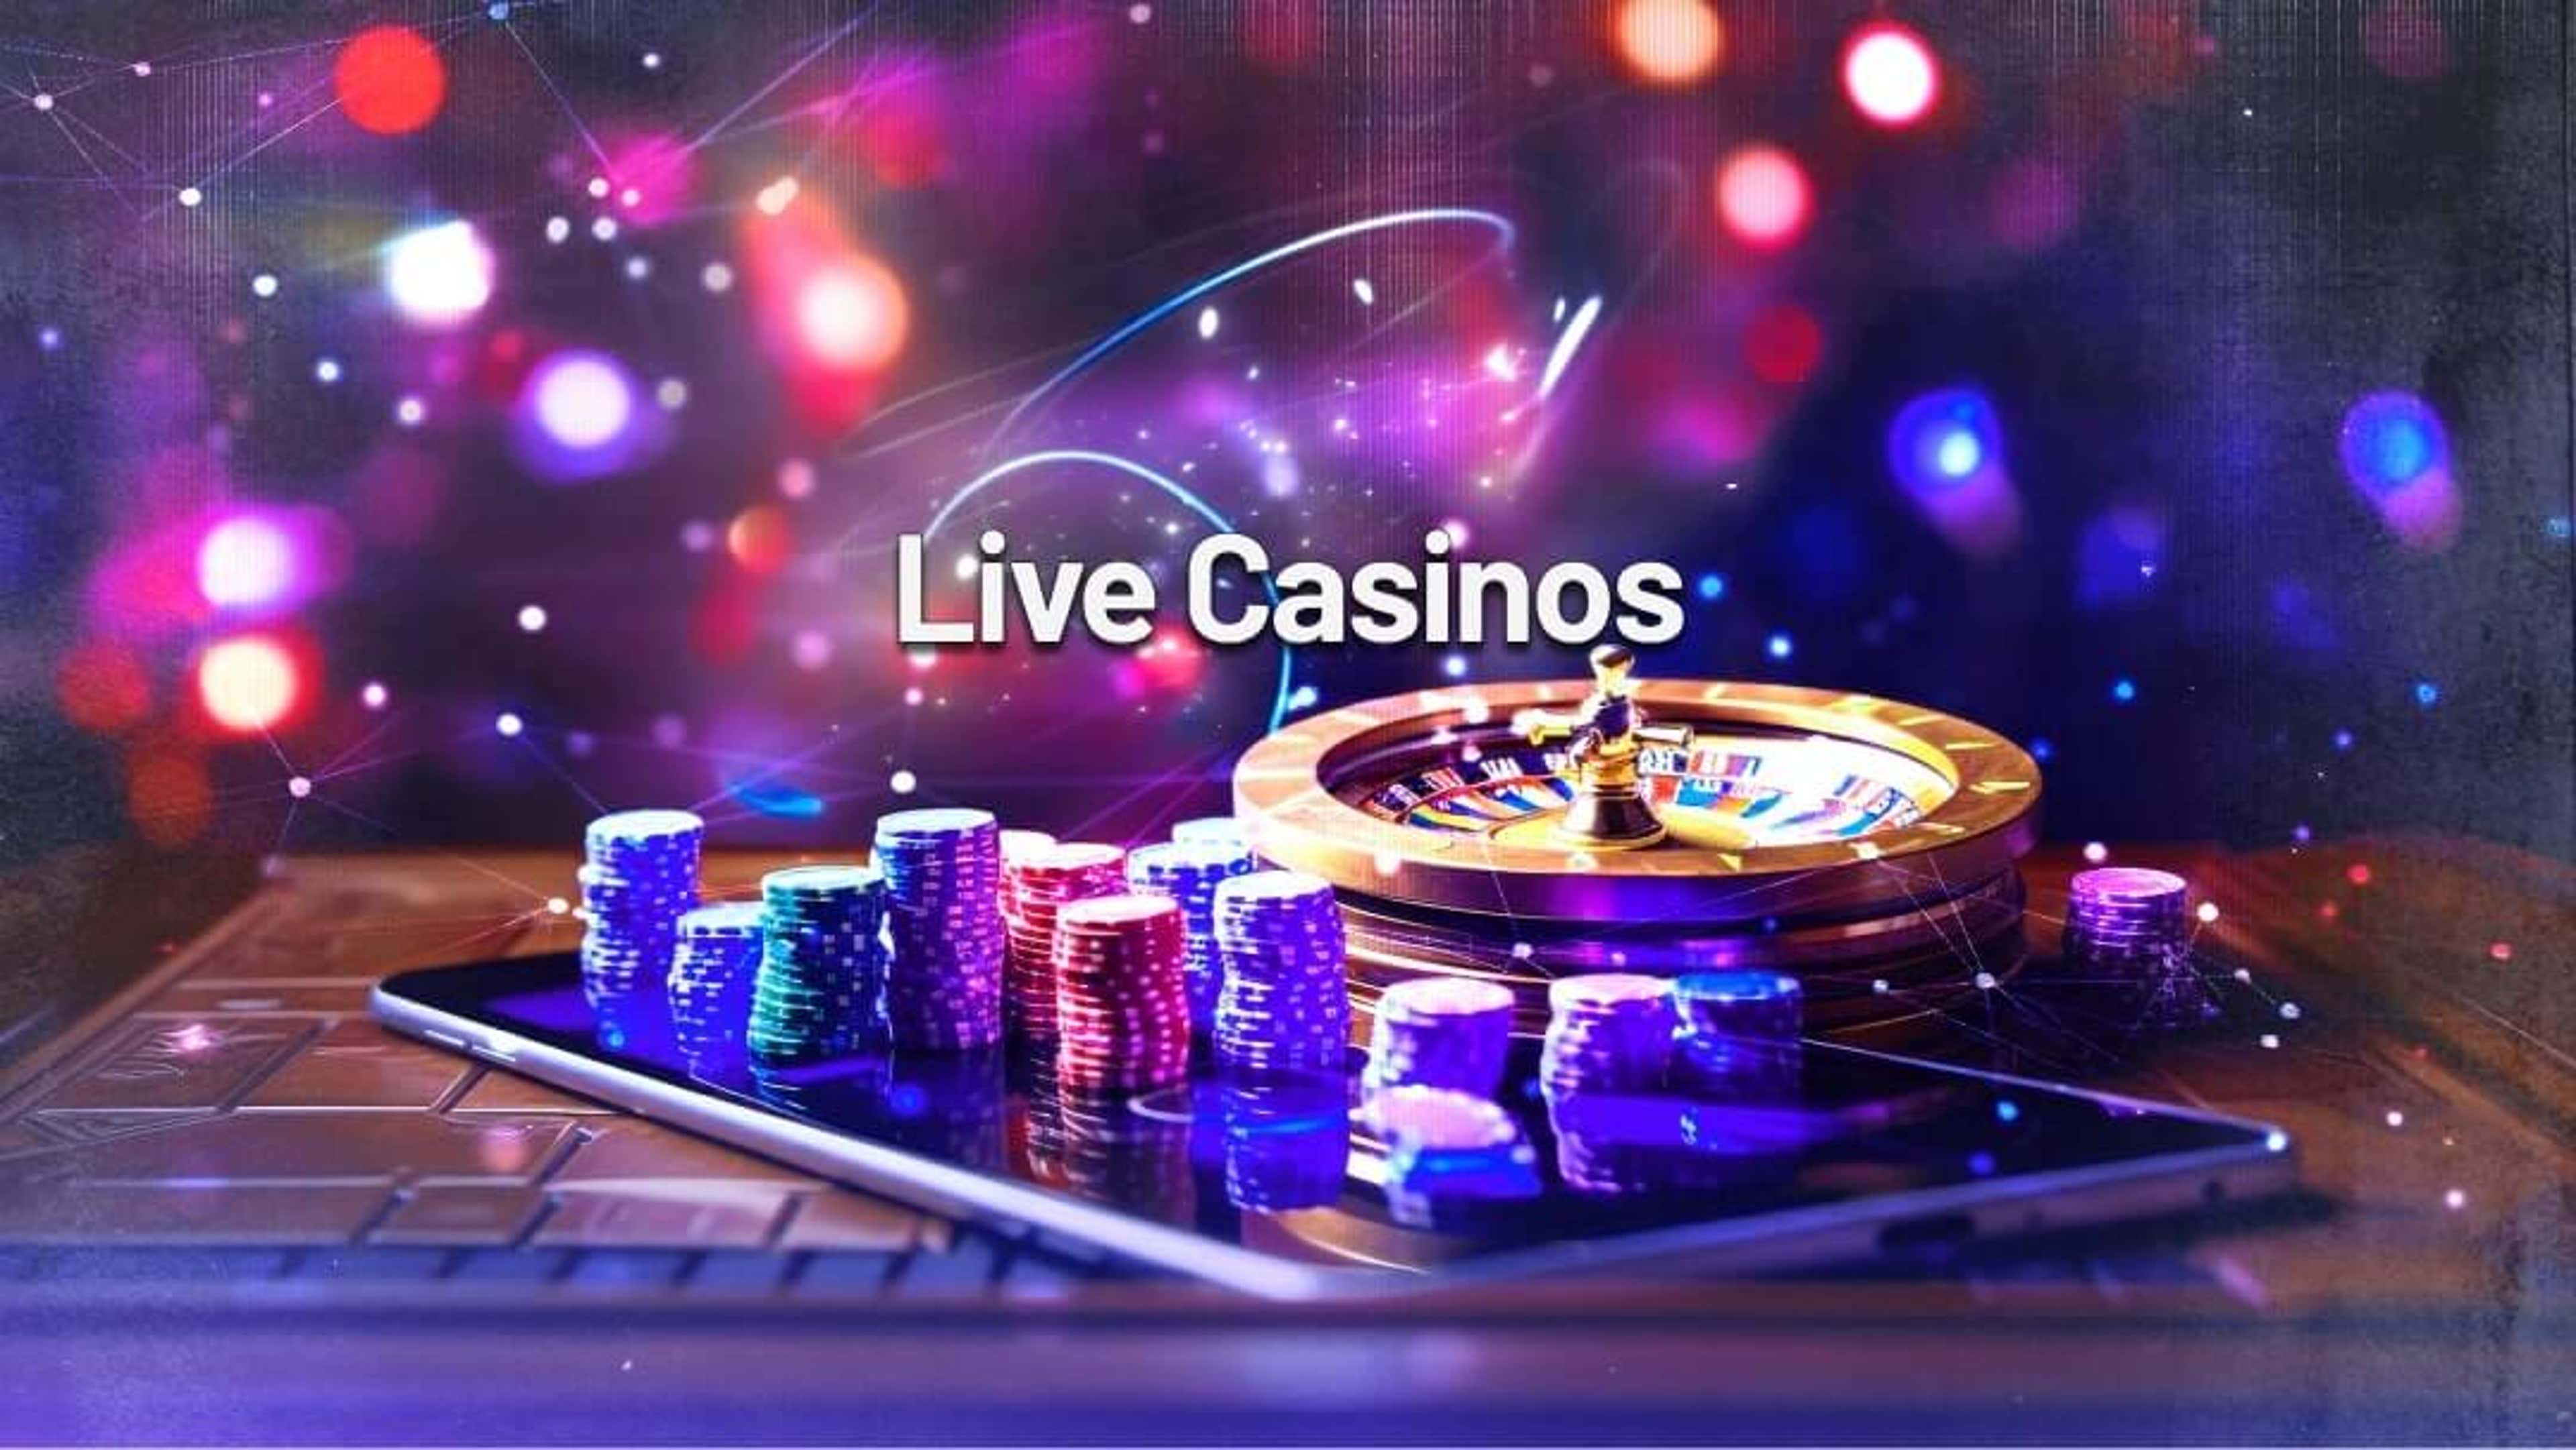 liga live casino